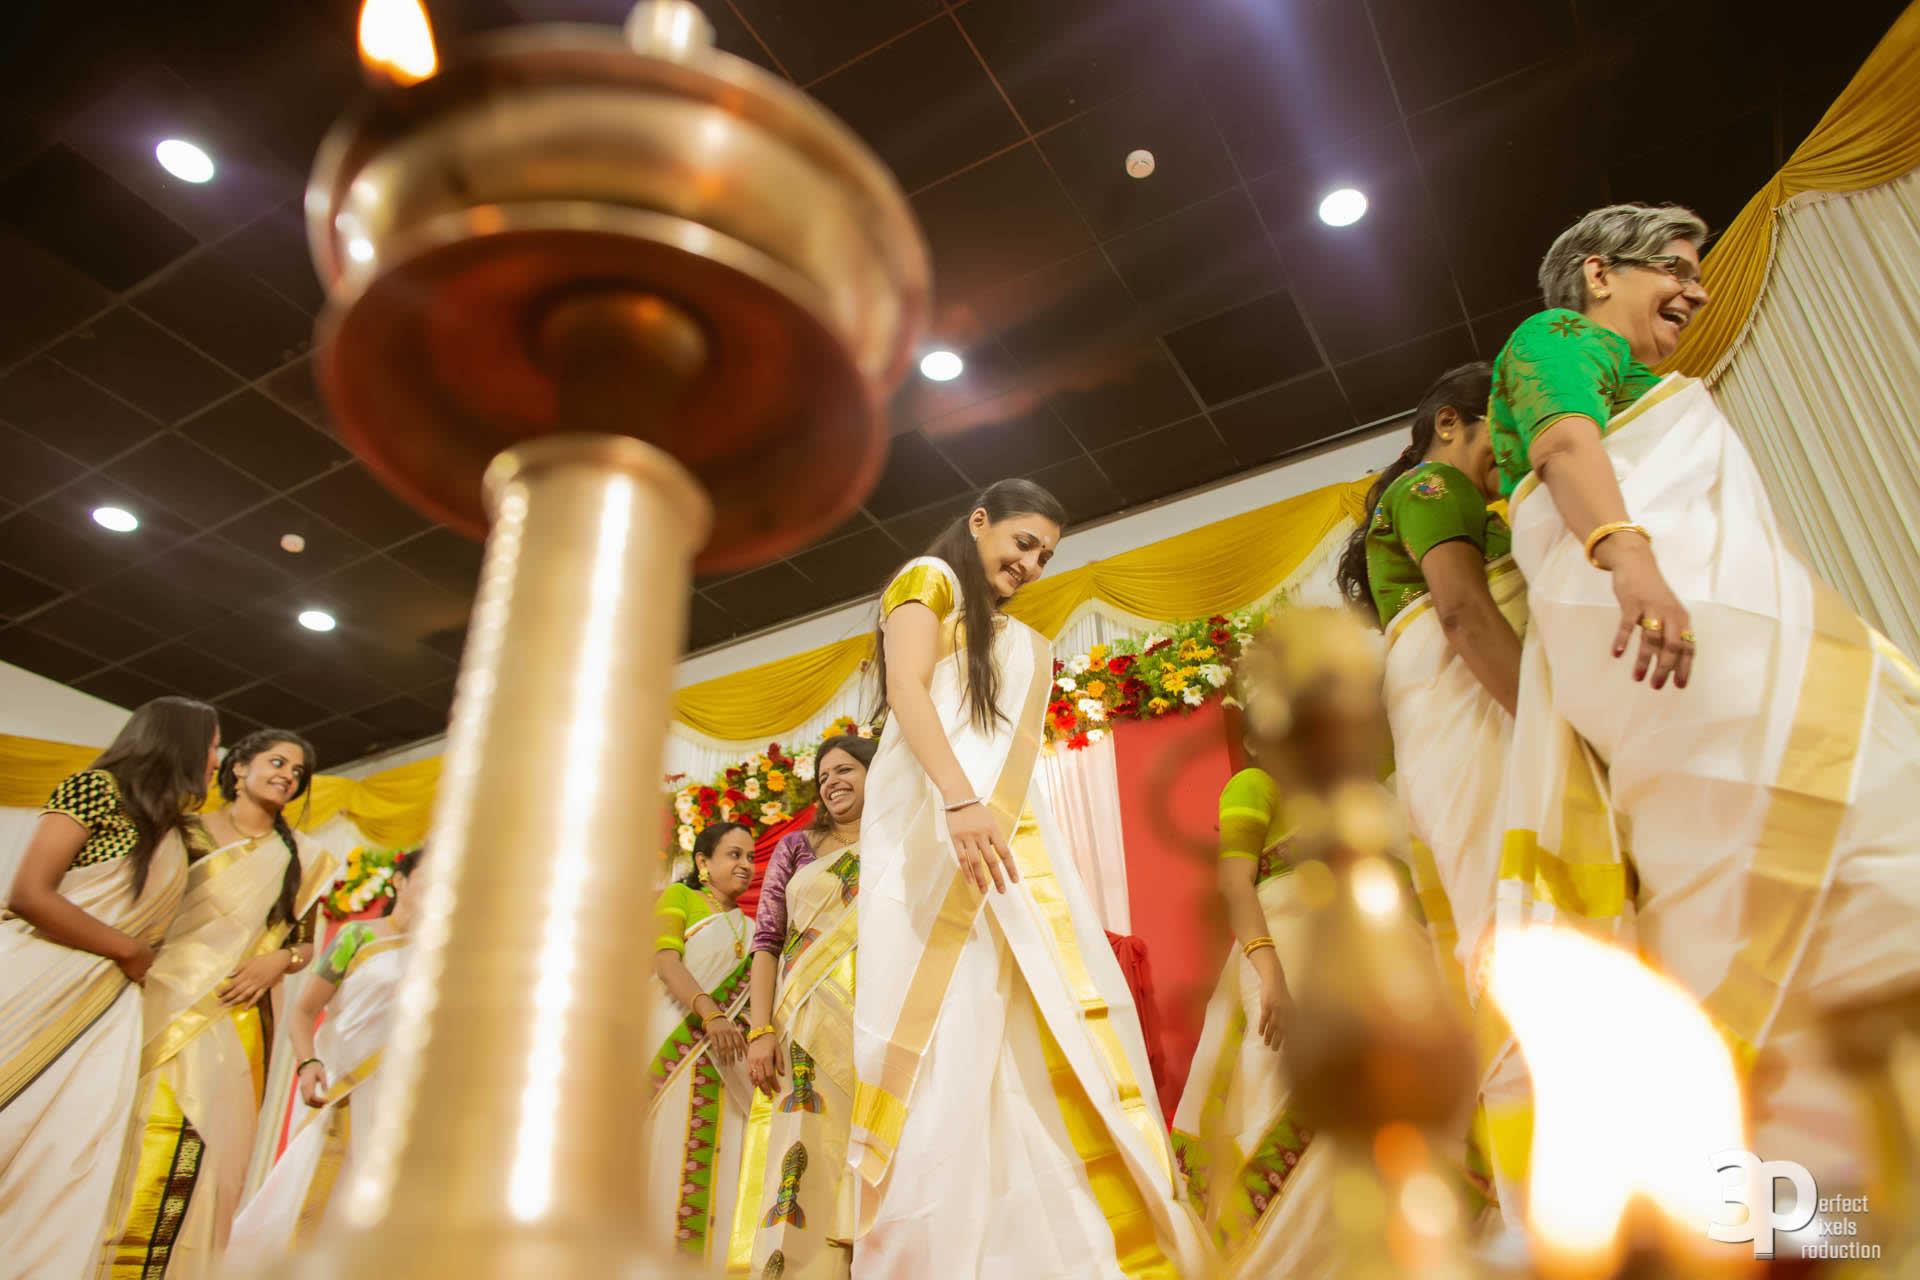 3P_Wedding_Chandigarh_Stories_Maneesh_Sreedevi